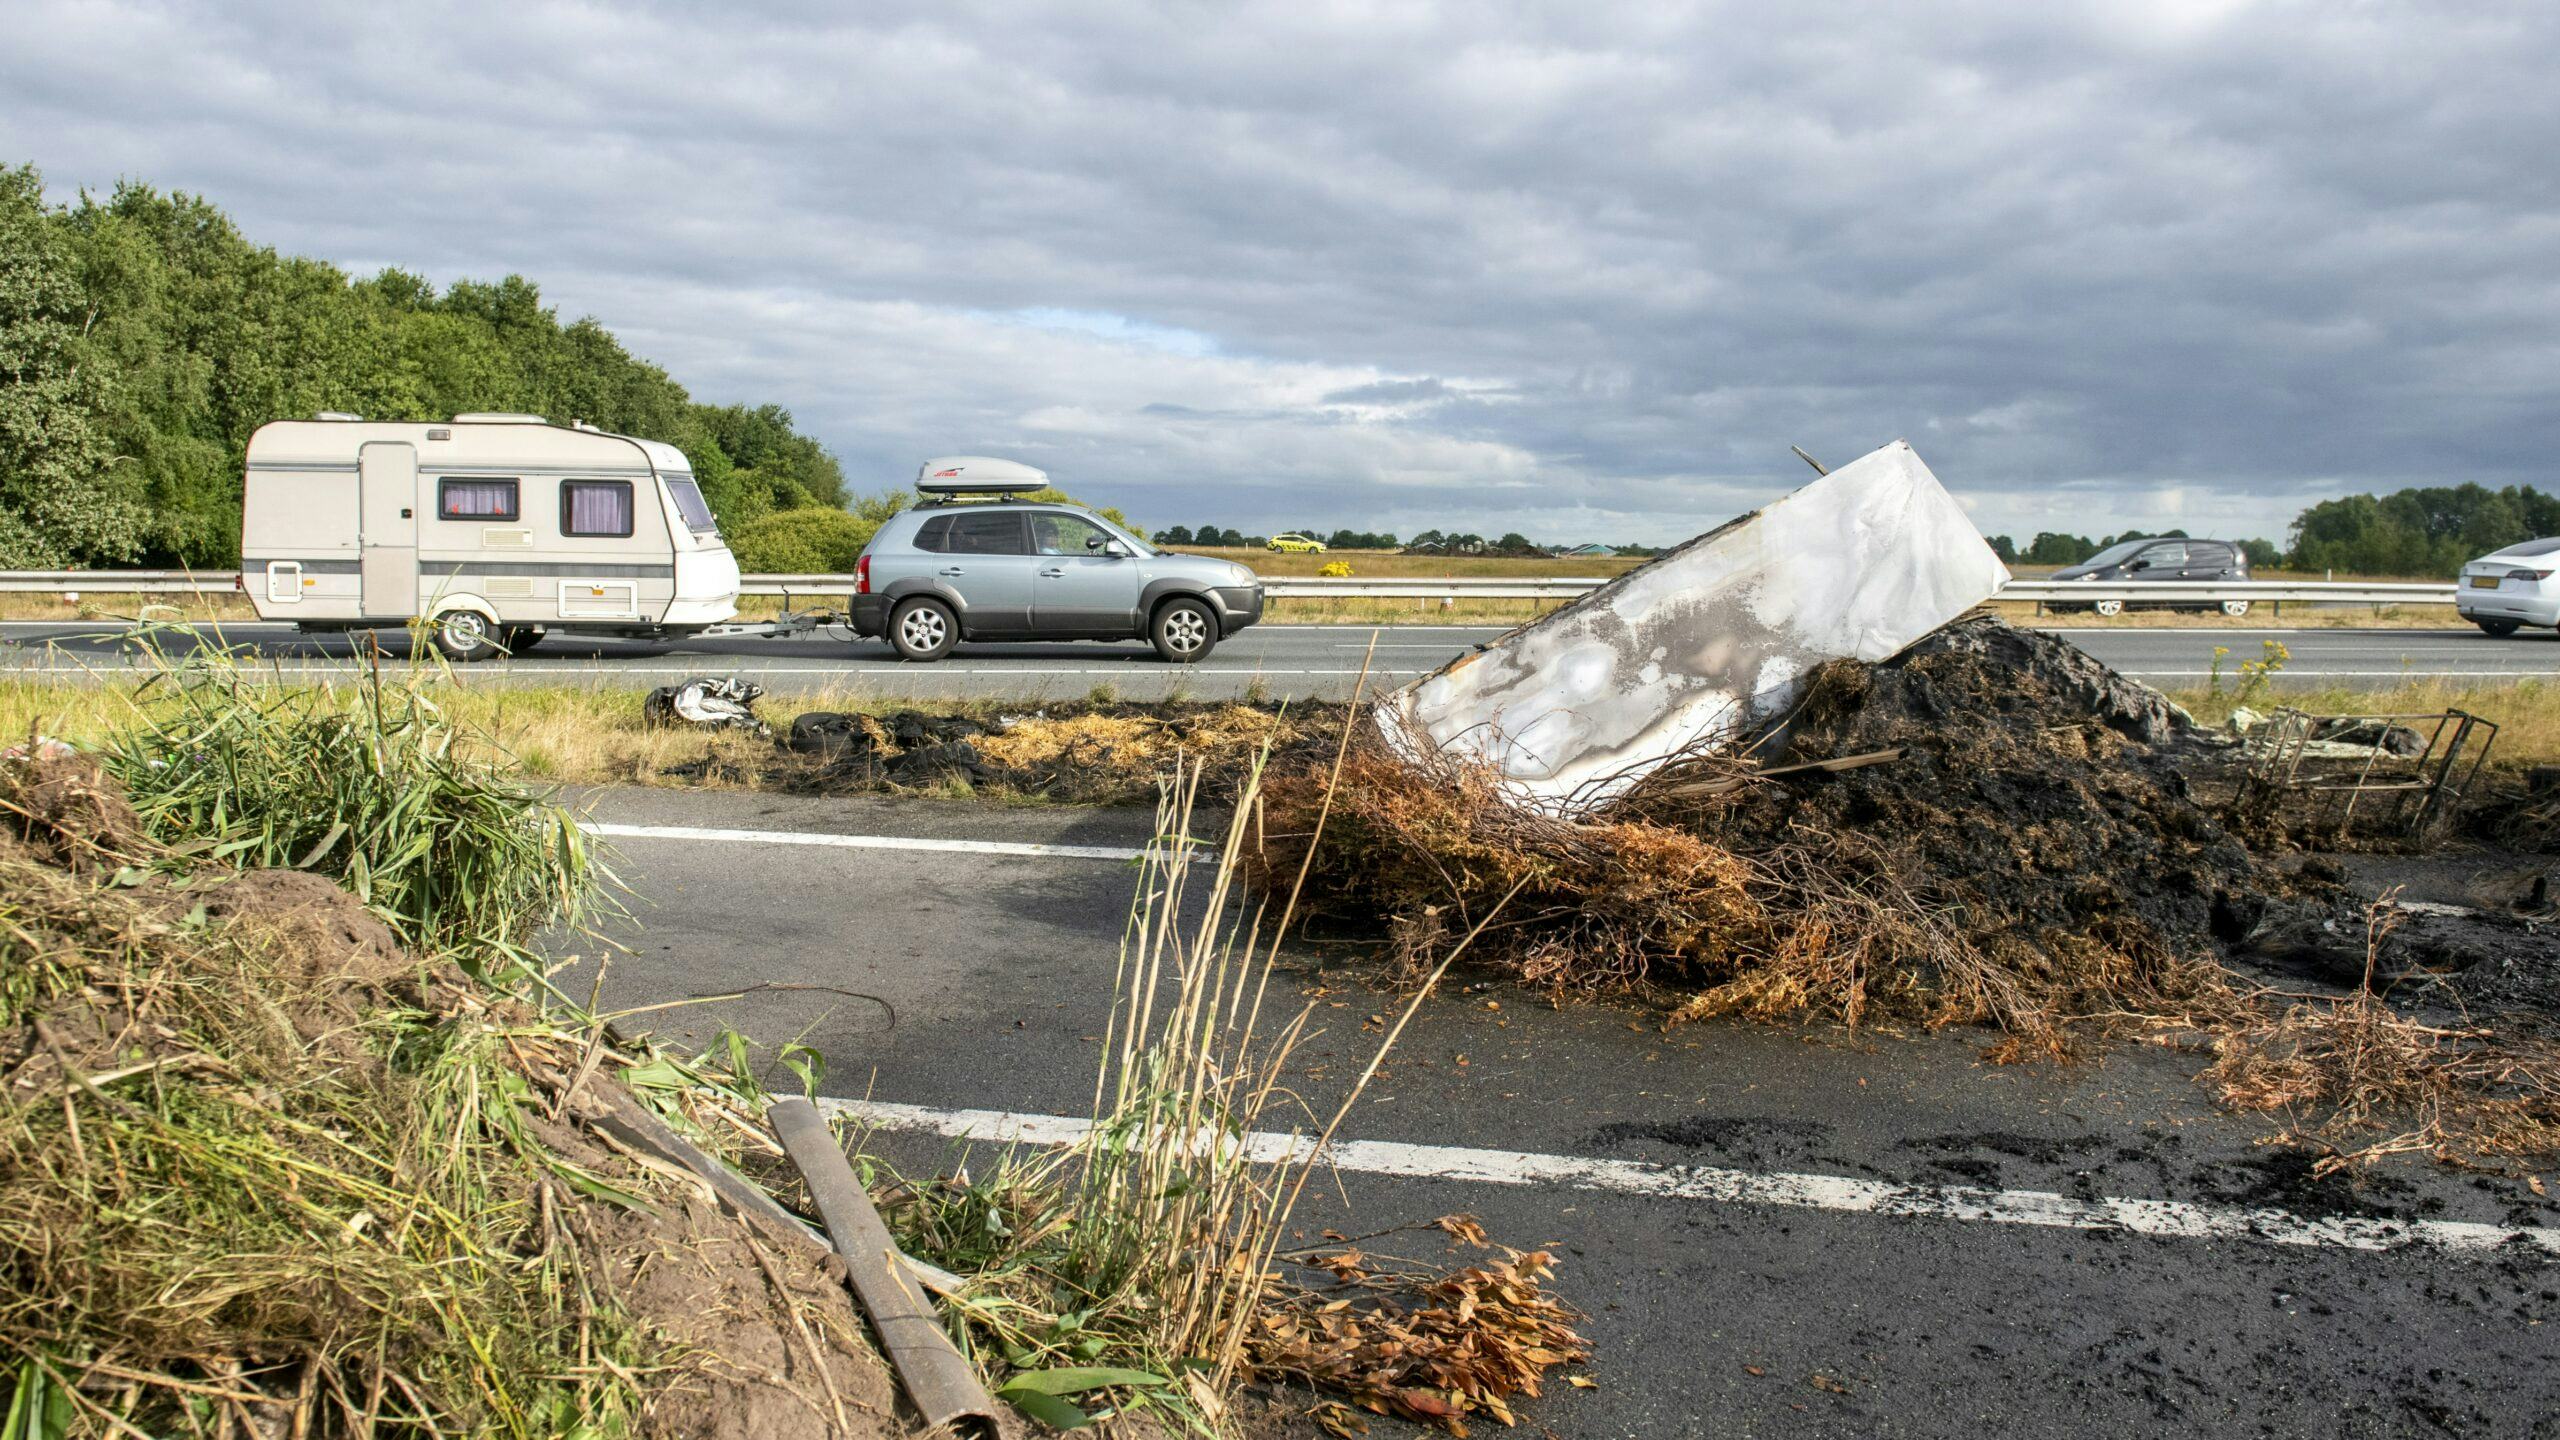 Afval op de A7 tussen Drachtstercompagnie en Frieschepalen gedumpt door boeren uit protest tegen de stikstofregels. Foto: ANP JILMER POSTMA